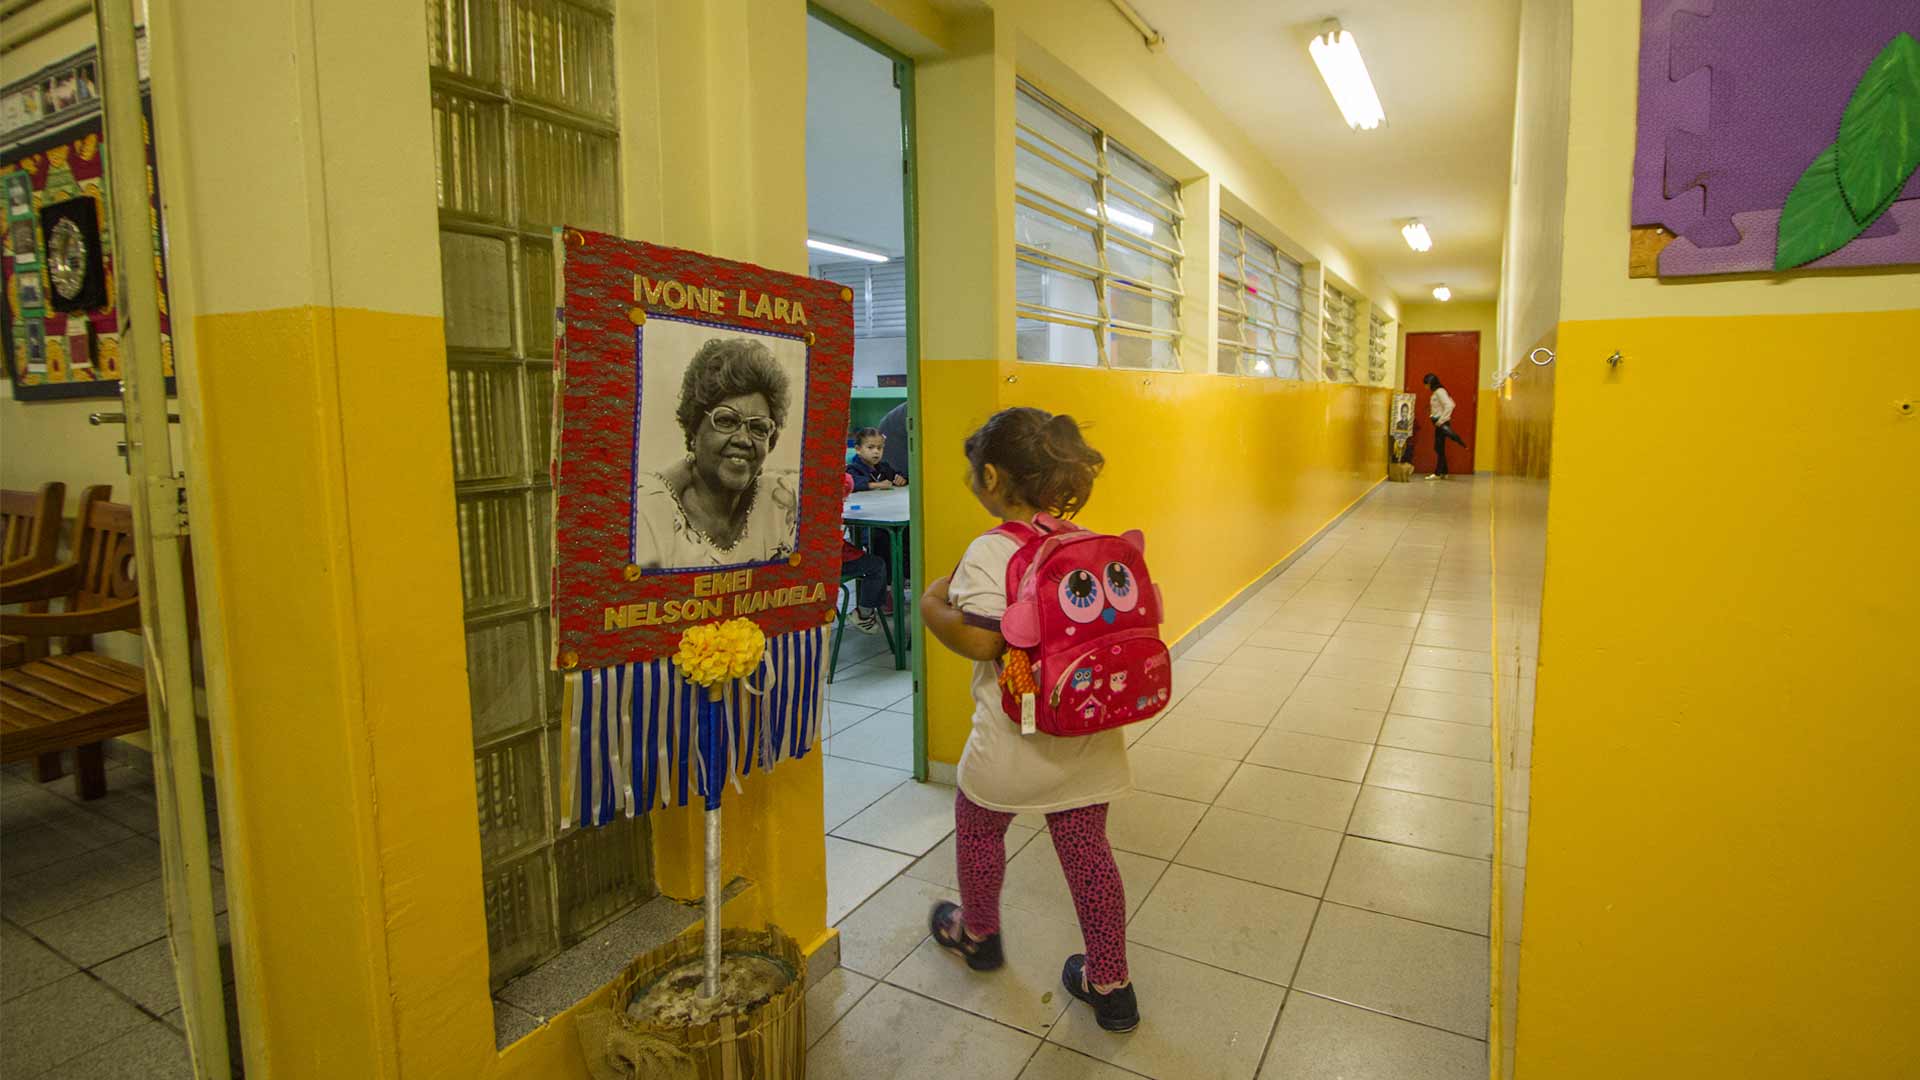 Foto da entrada da sala de aula, tem uma menina entrando em sala de aula, com sua mochila rosa, e ao lado da entrada da sala, uma placa com o retrato da Dona Ivone Lara